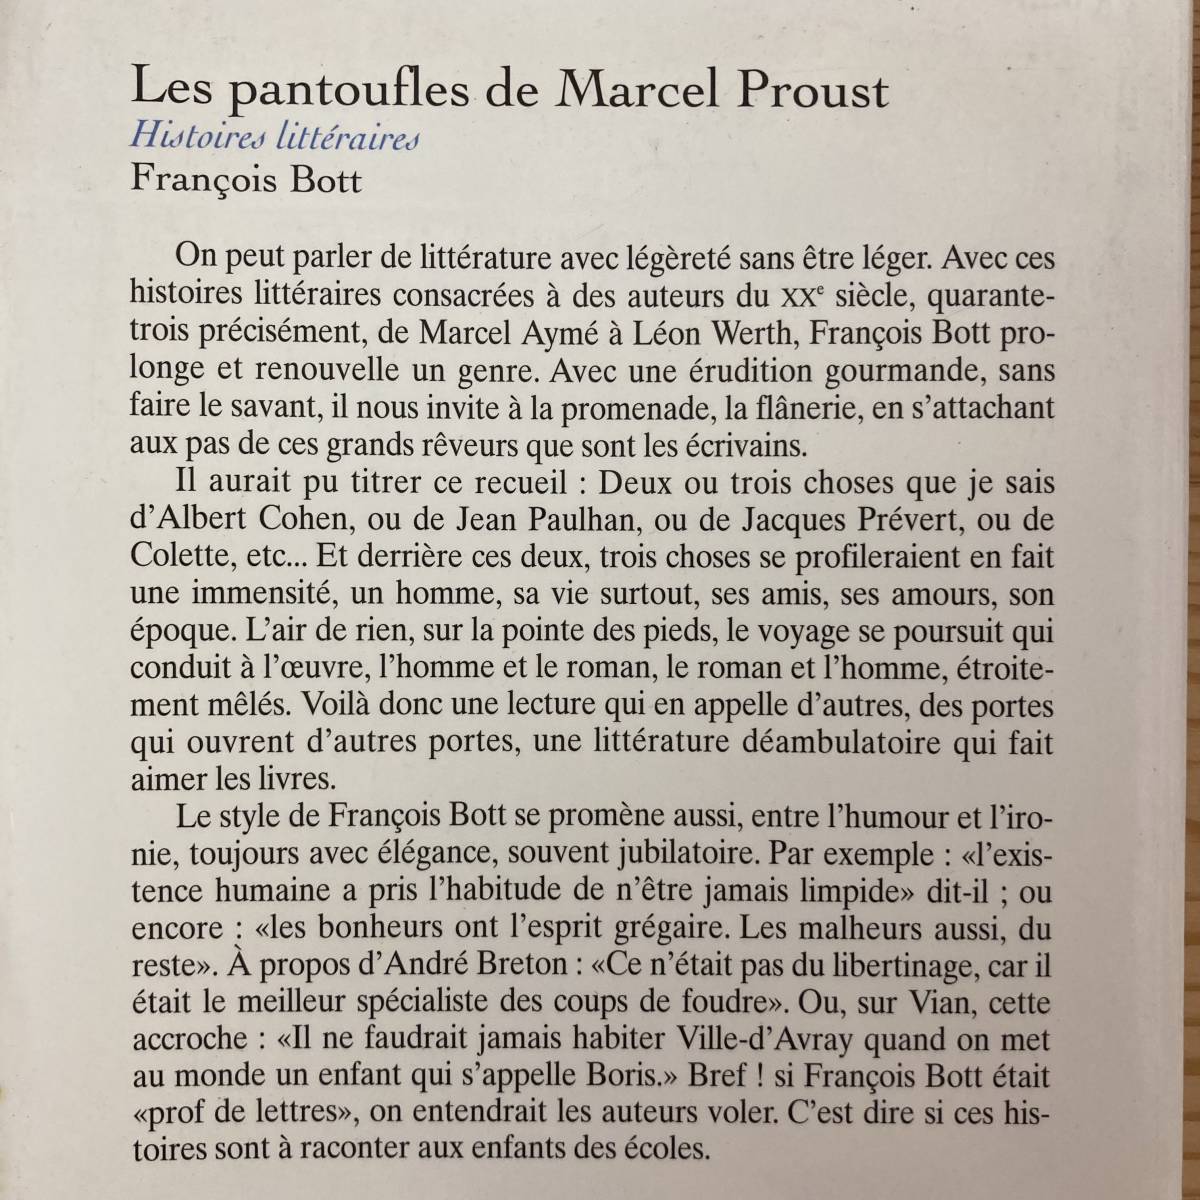 【仏語洋書】Les pantoufles de Marcel Proust / Francois Bott（著）【マルセル・プルースト】_画像2